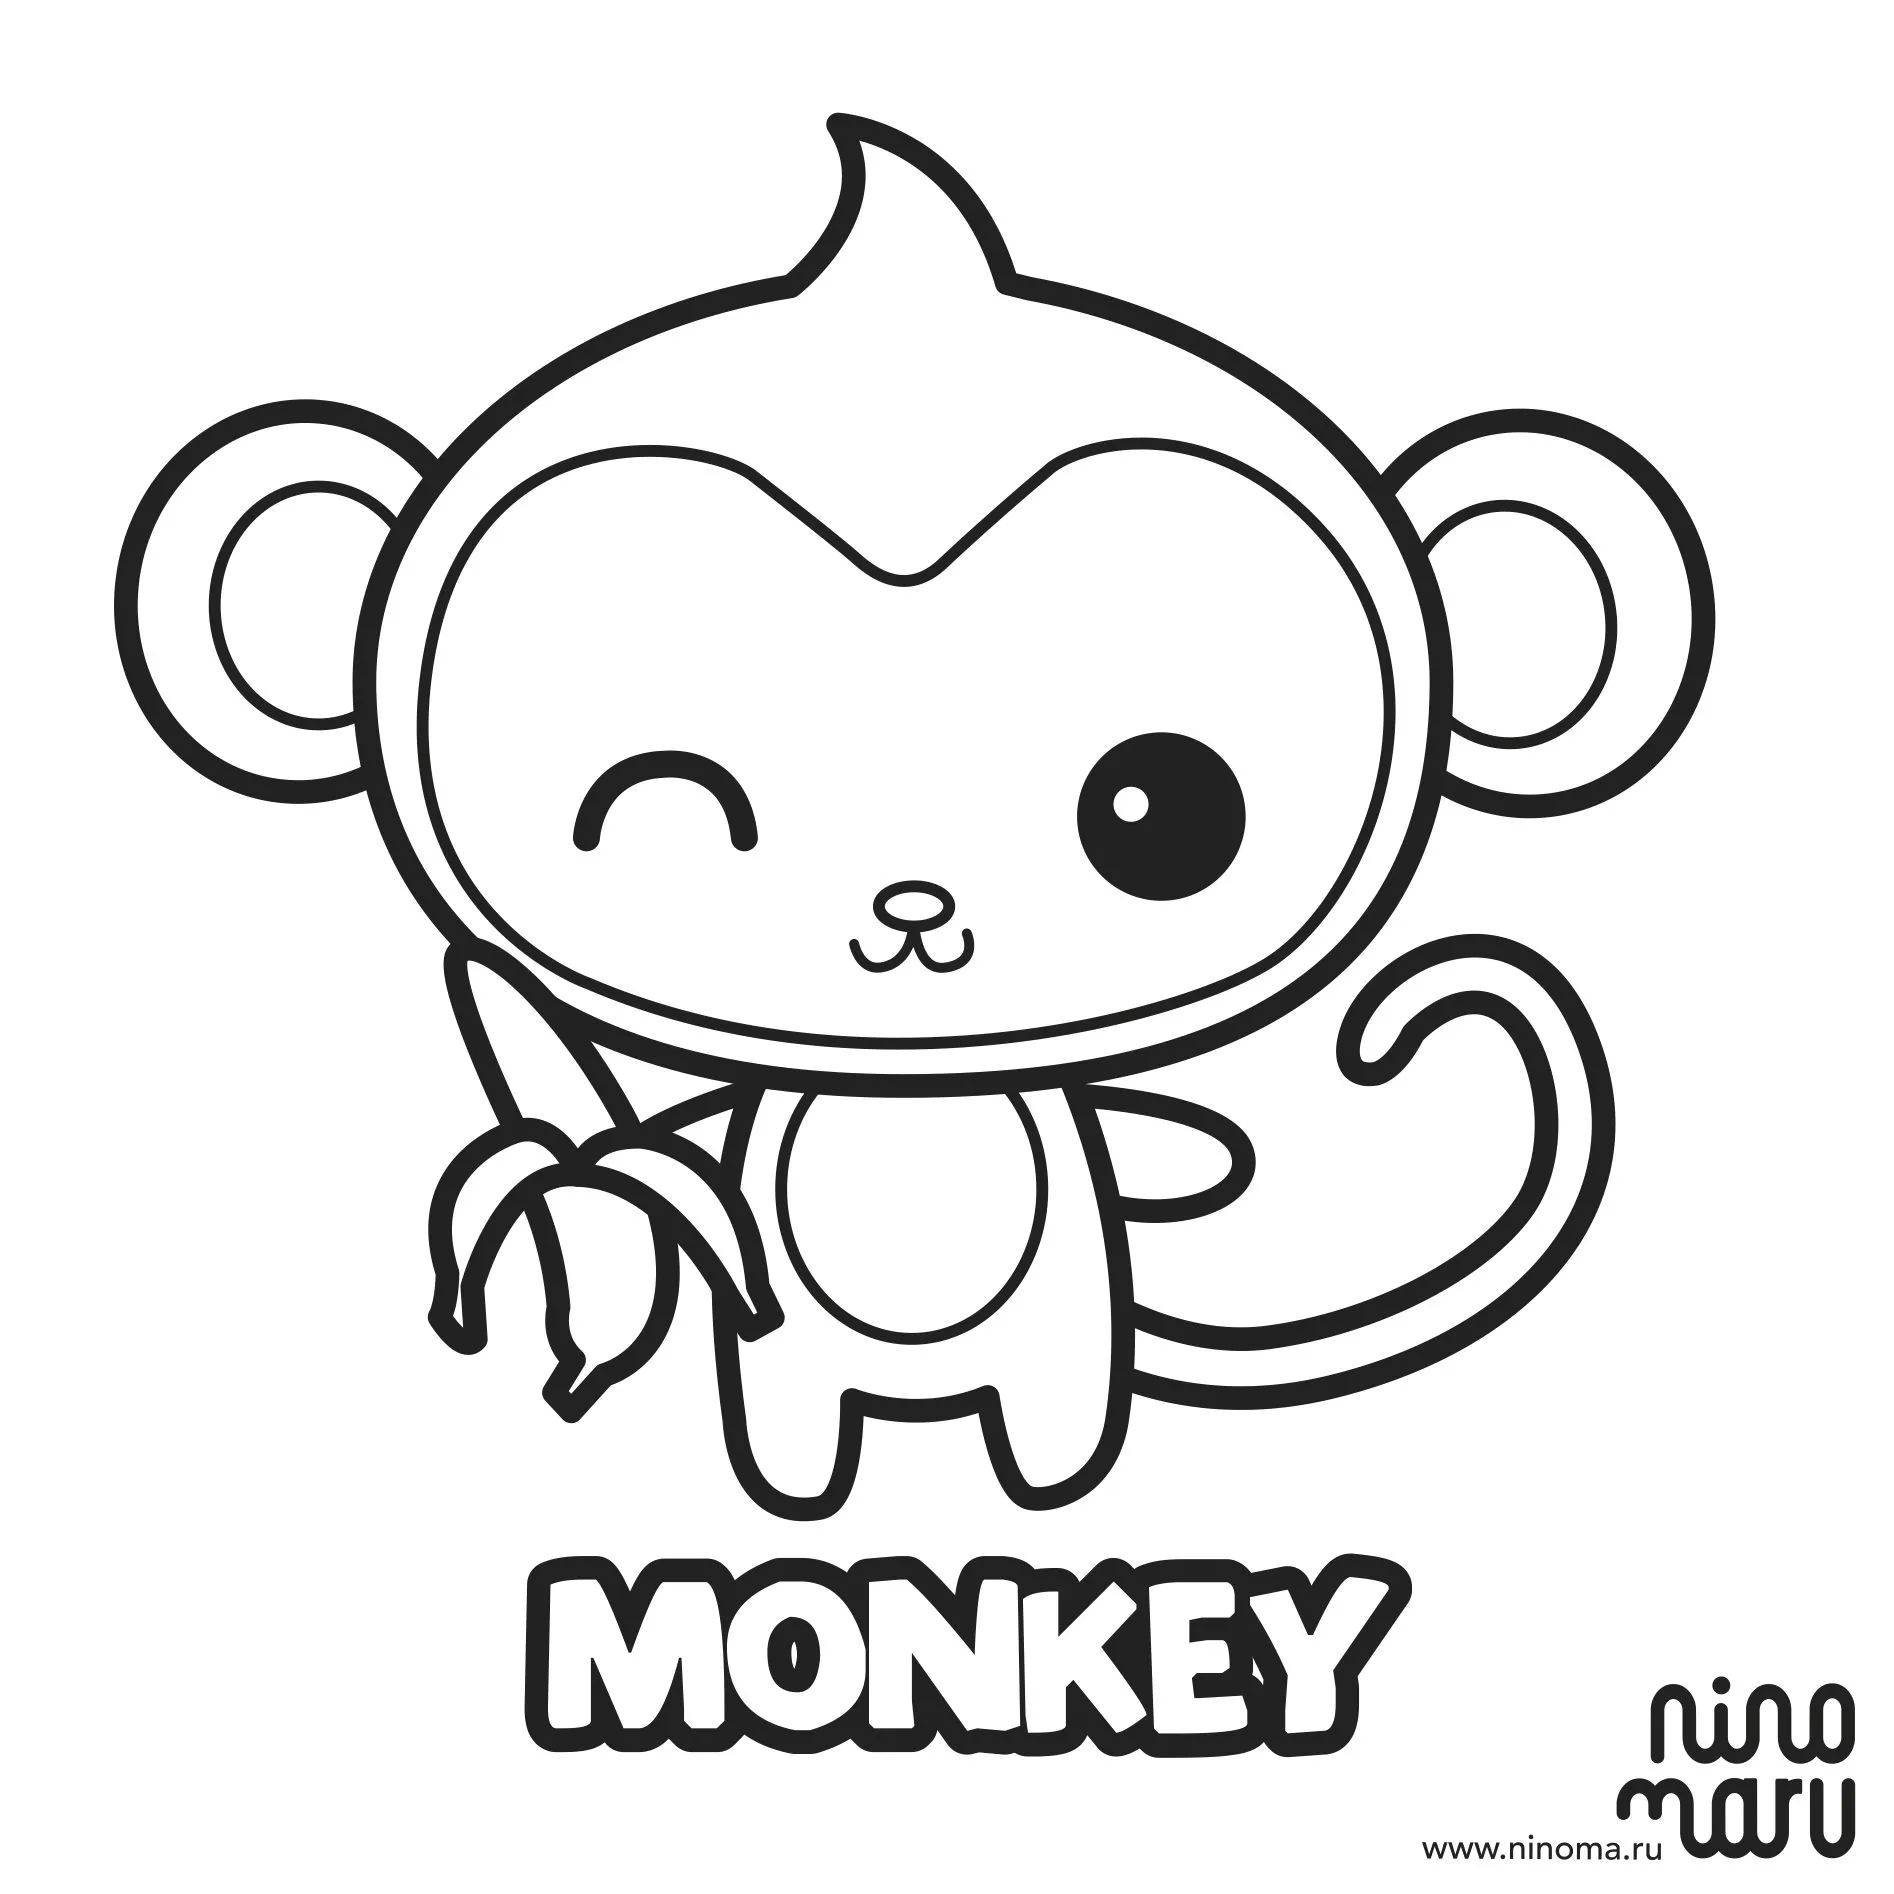 Monkey | Ninomaru